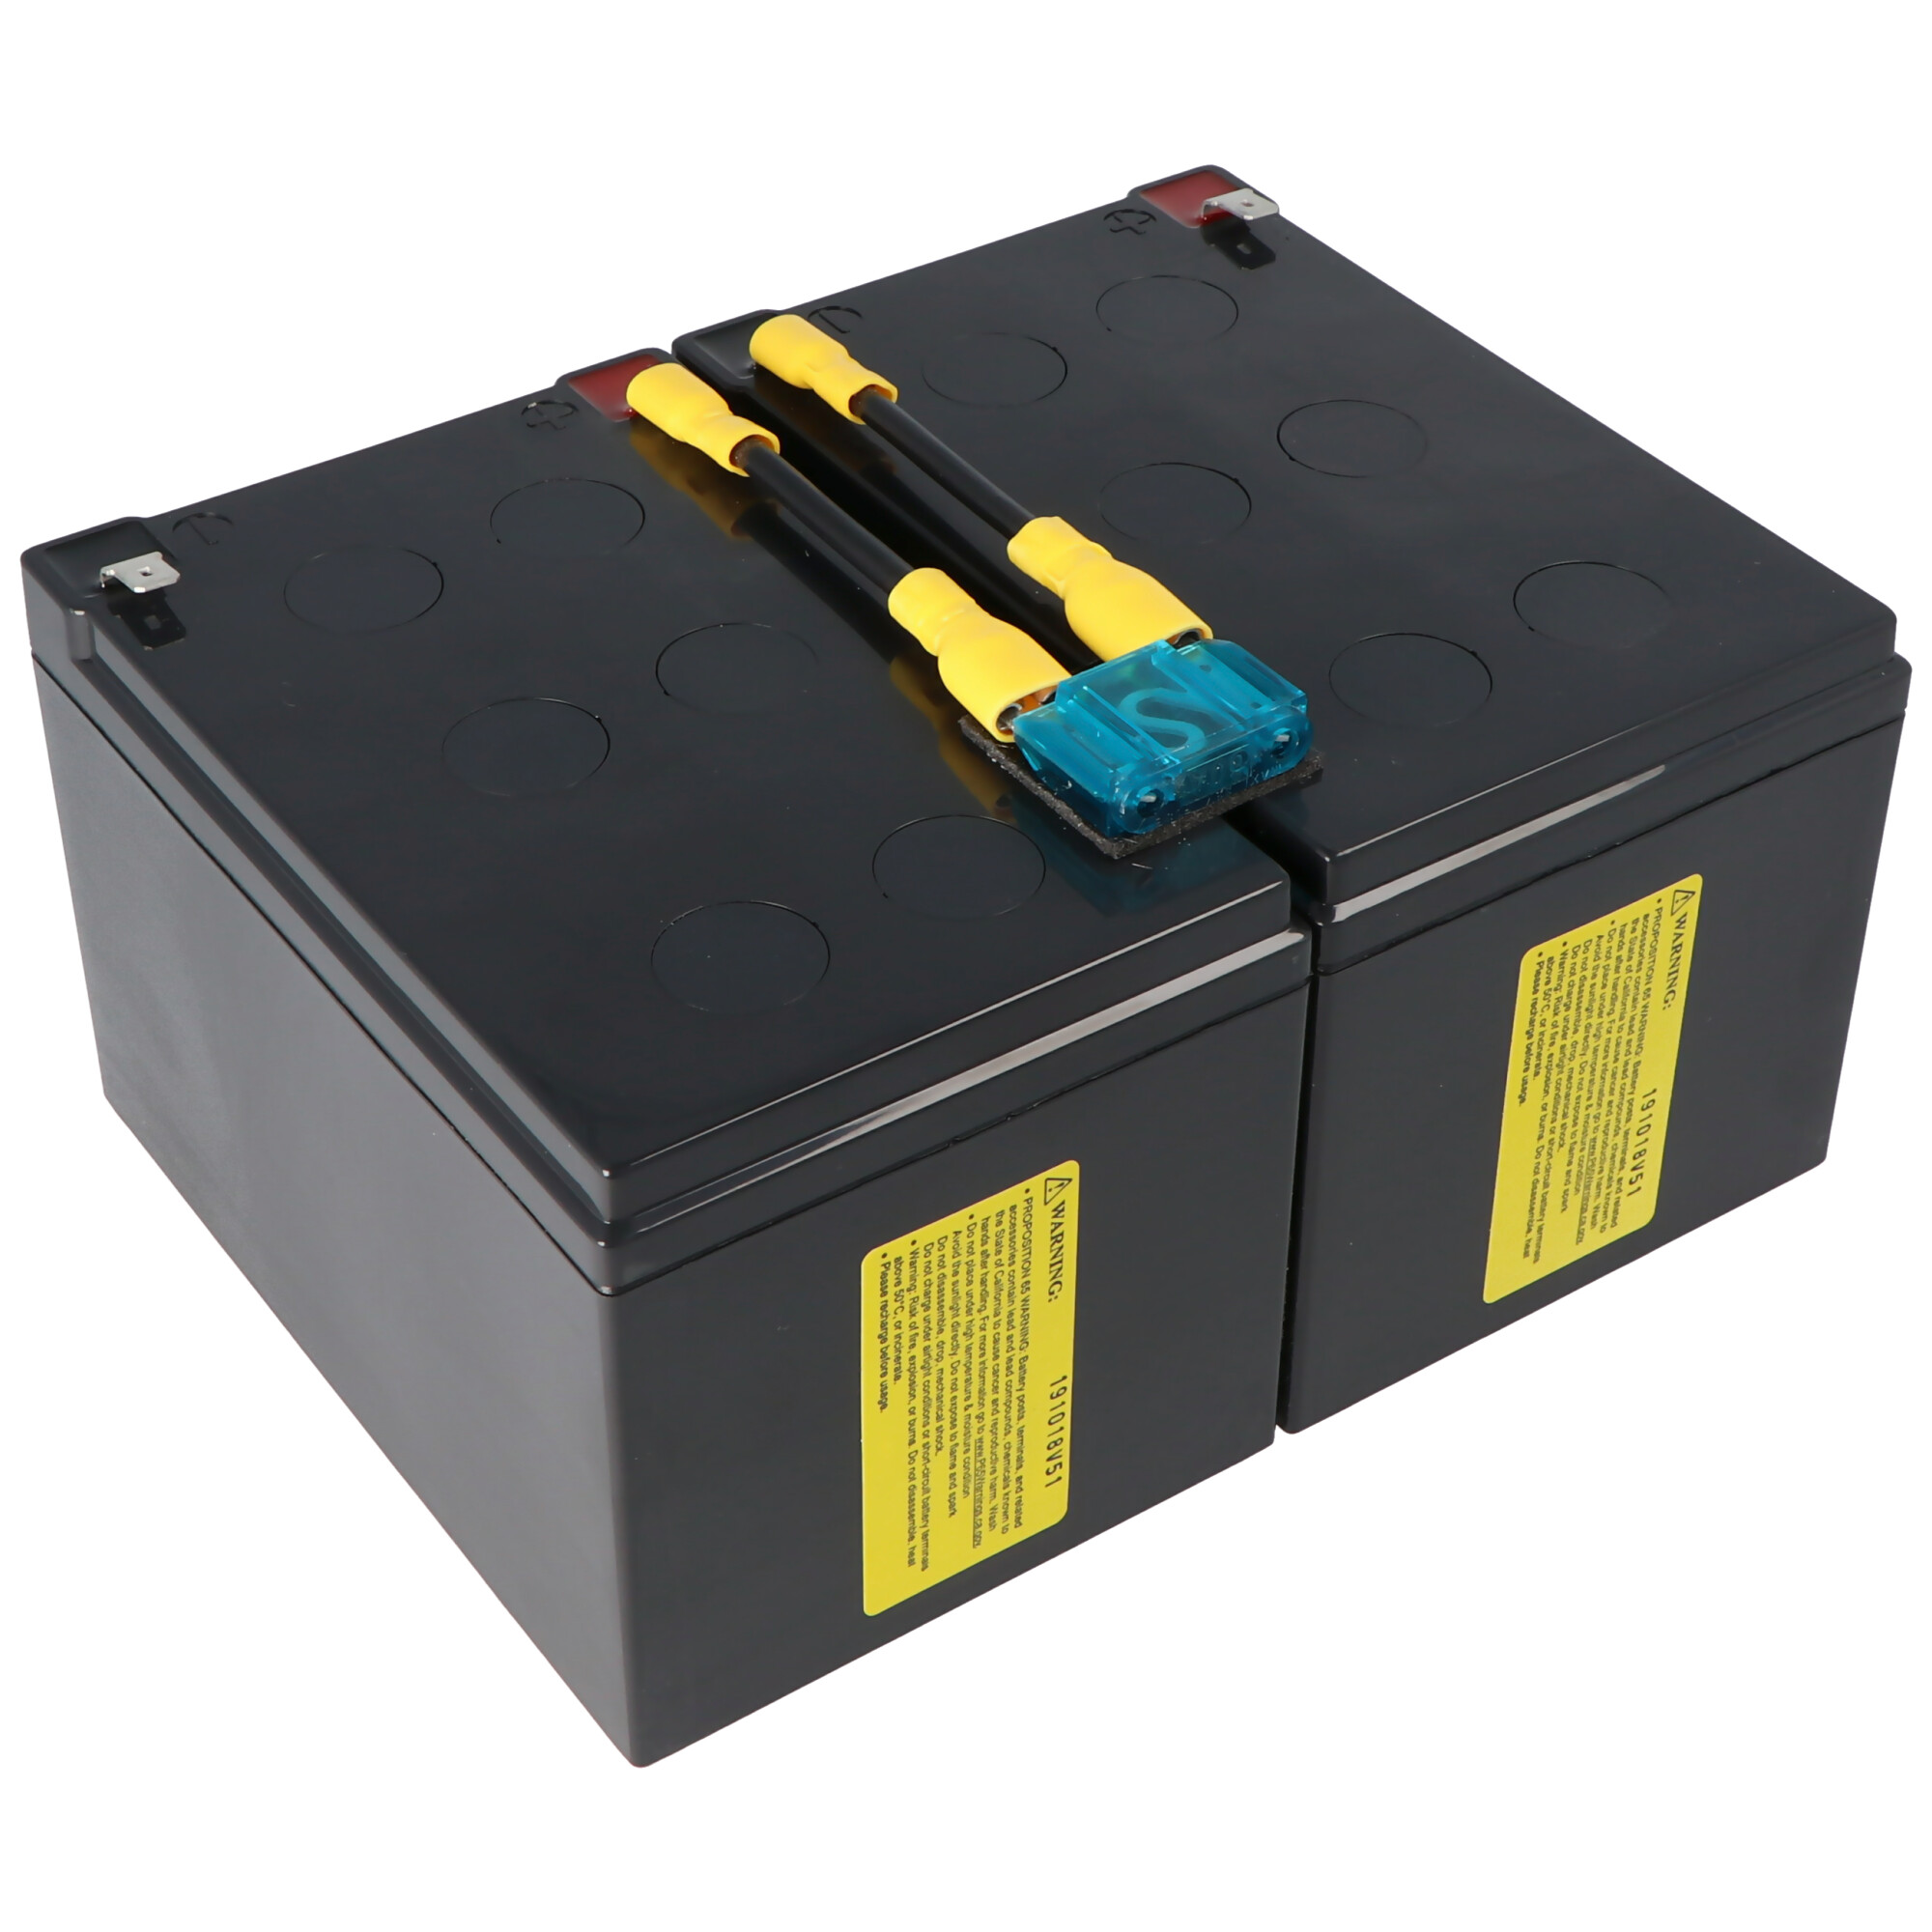 Akku passend für APC Ersatzbatterie Nr. 6 APC-RBC6, CSB SCD6 Ersatzbatterie vormontiert mit Kabel und Stecker